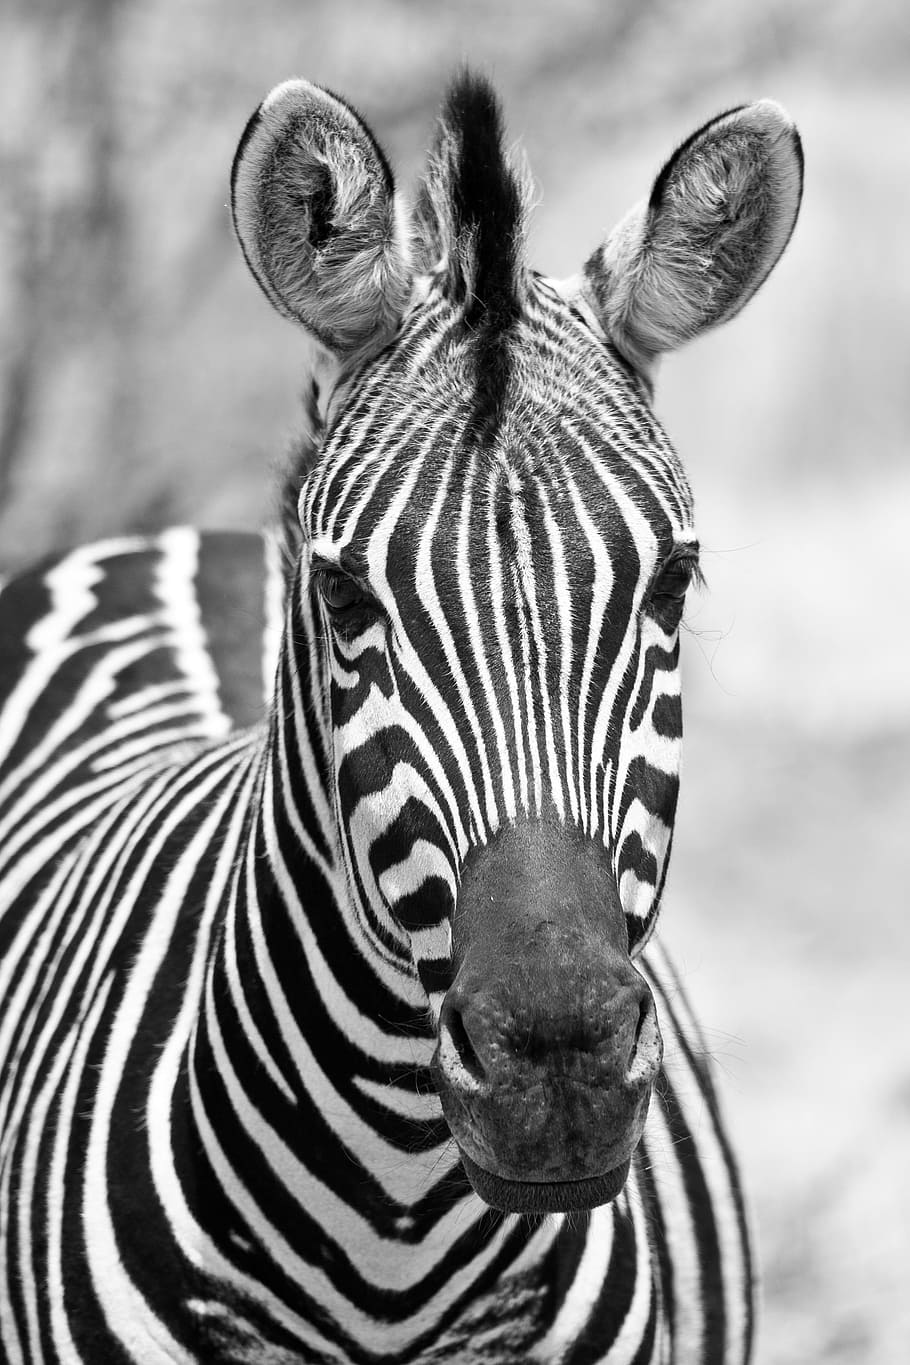 グレースケール写真, シマウマ, モノクロ, ブラックホワイト, ピラネスバーグ国立公園, ポートレート, 南アフリカ, 垂直, 野生動物, 動物野生動物